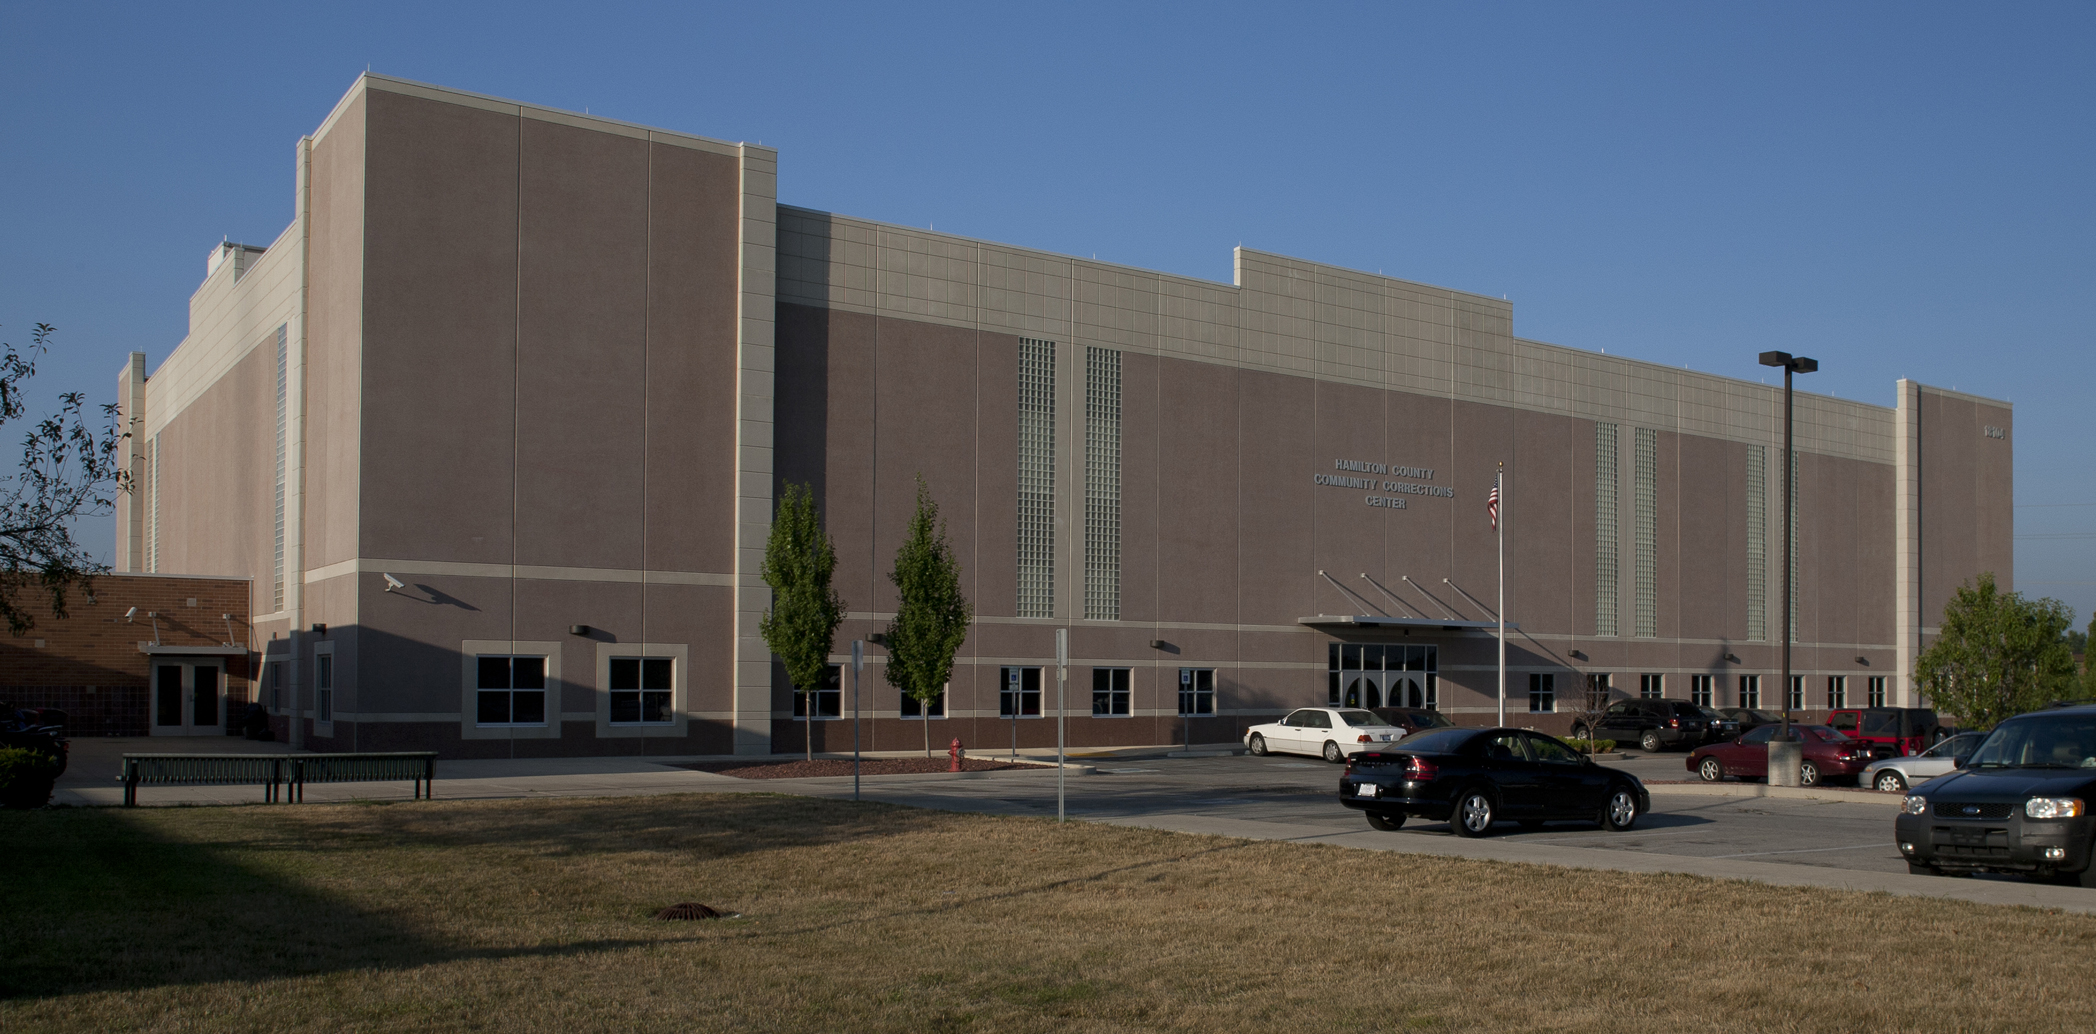 Hamilton County Community Corrections Center